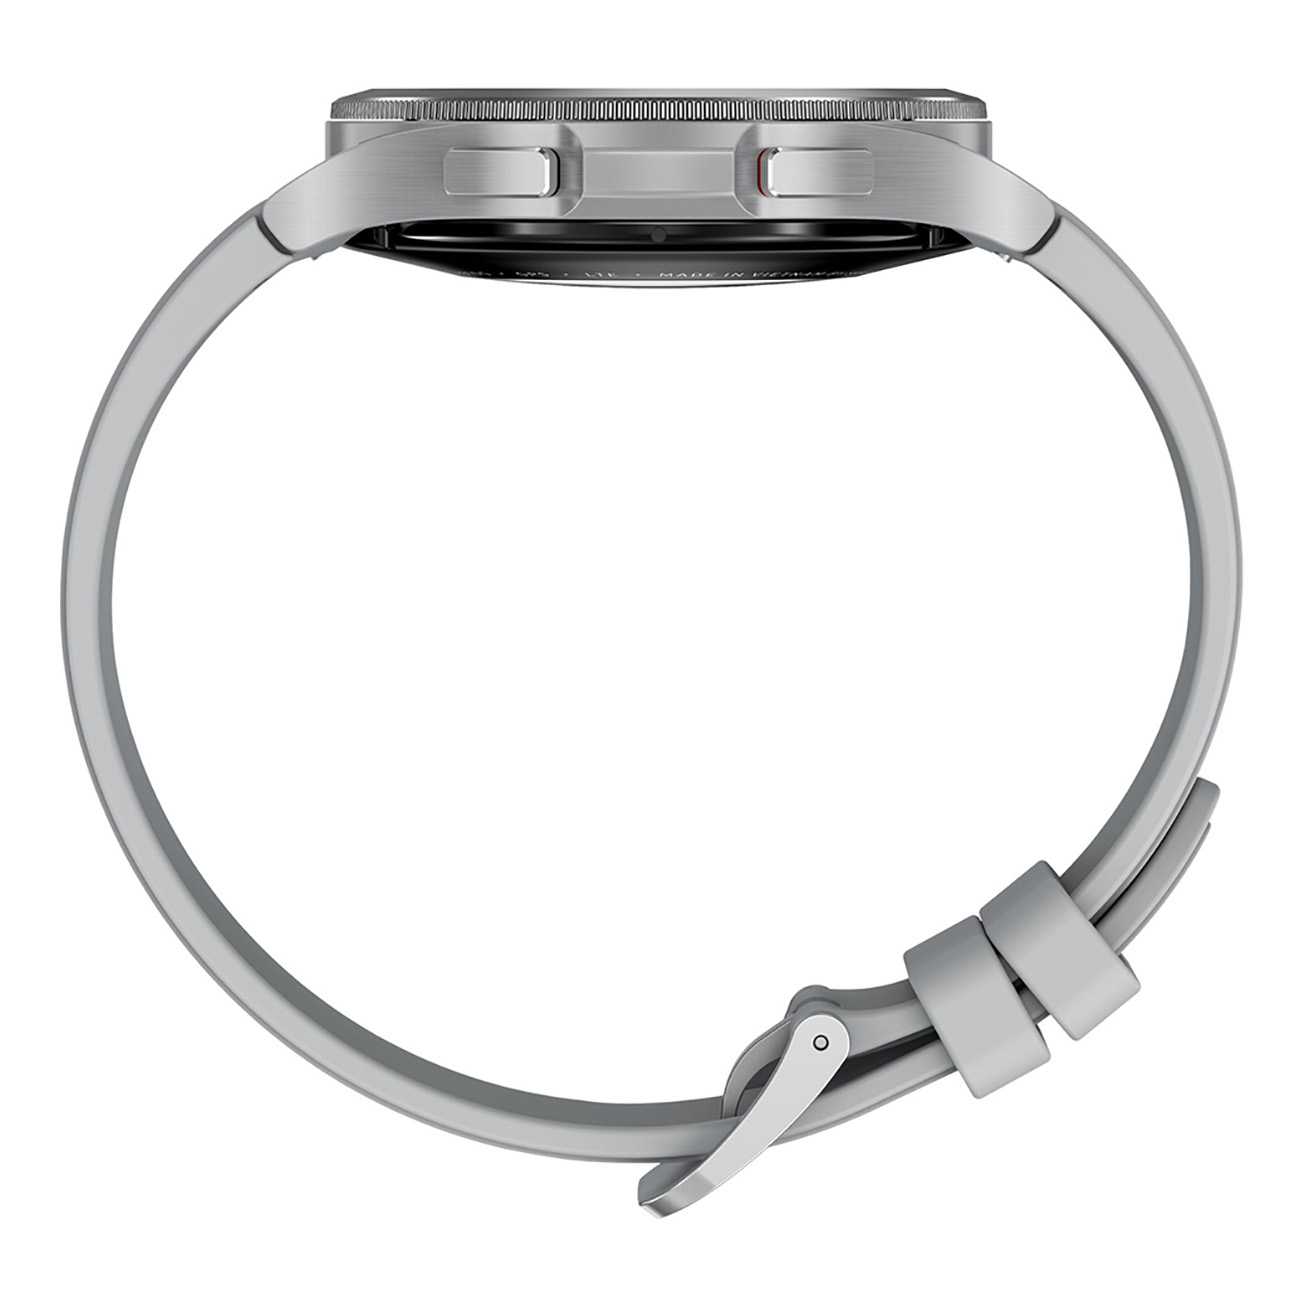 SAMSUNG Galaxy Watch silber M/L, 4 Smartwatch Flouroelastomer, Edelstahl